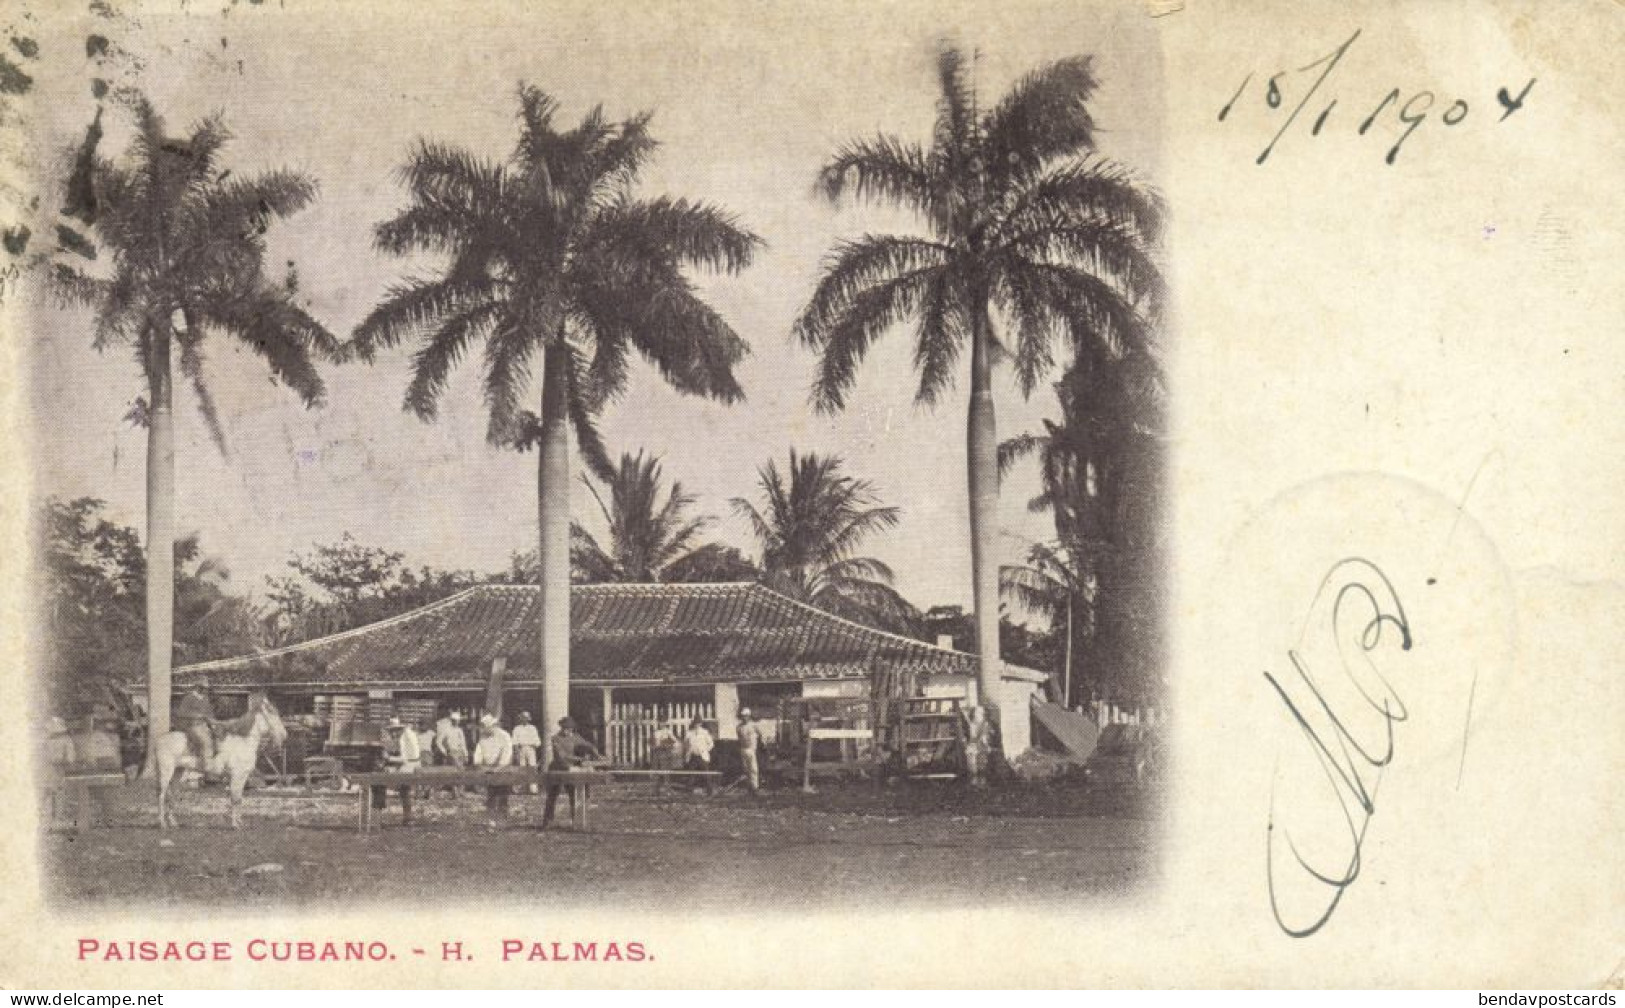 Cuba, HAVANA, Paisage Cubano, H. Palmas, Cuban Landscape (1904) Postcard - Cuba